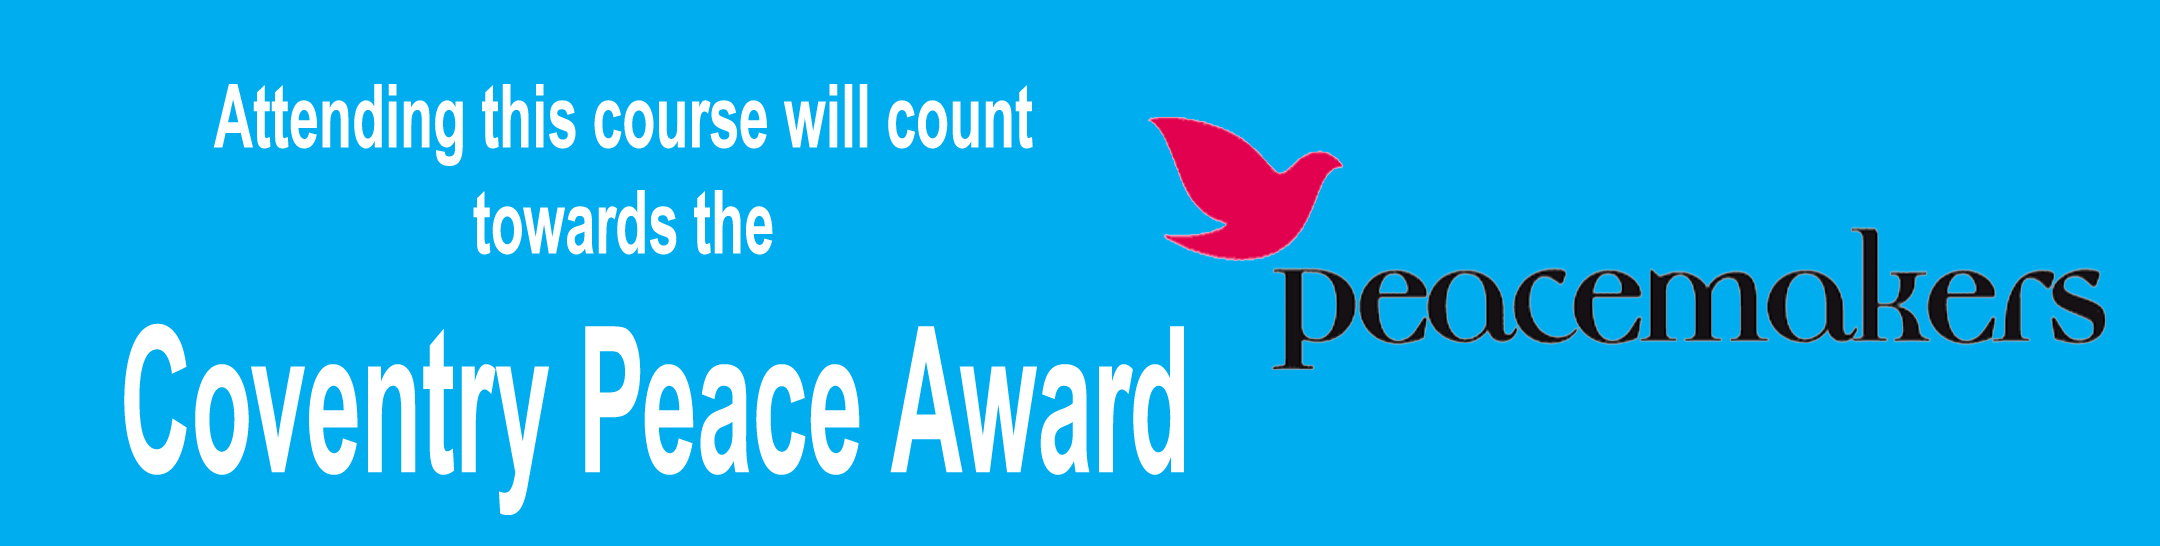 Coventry Peace Award